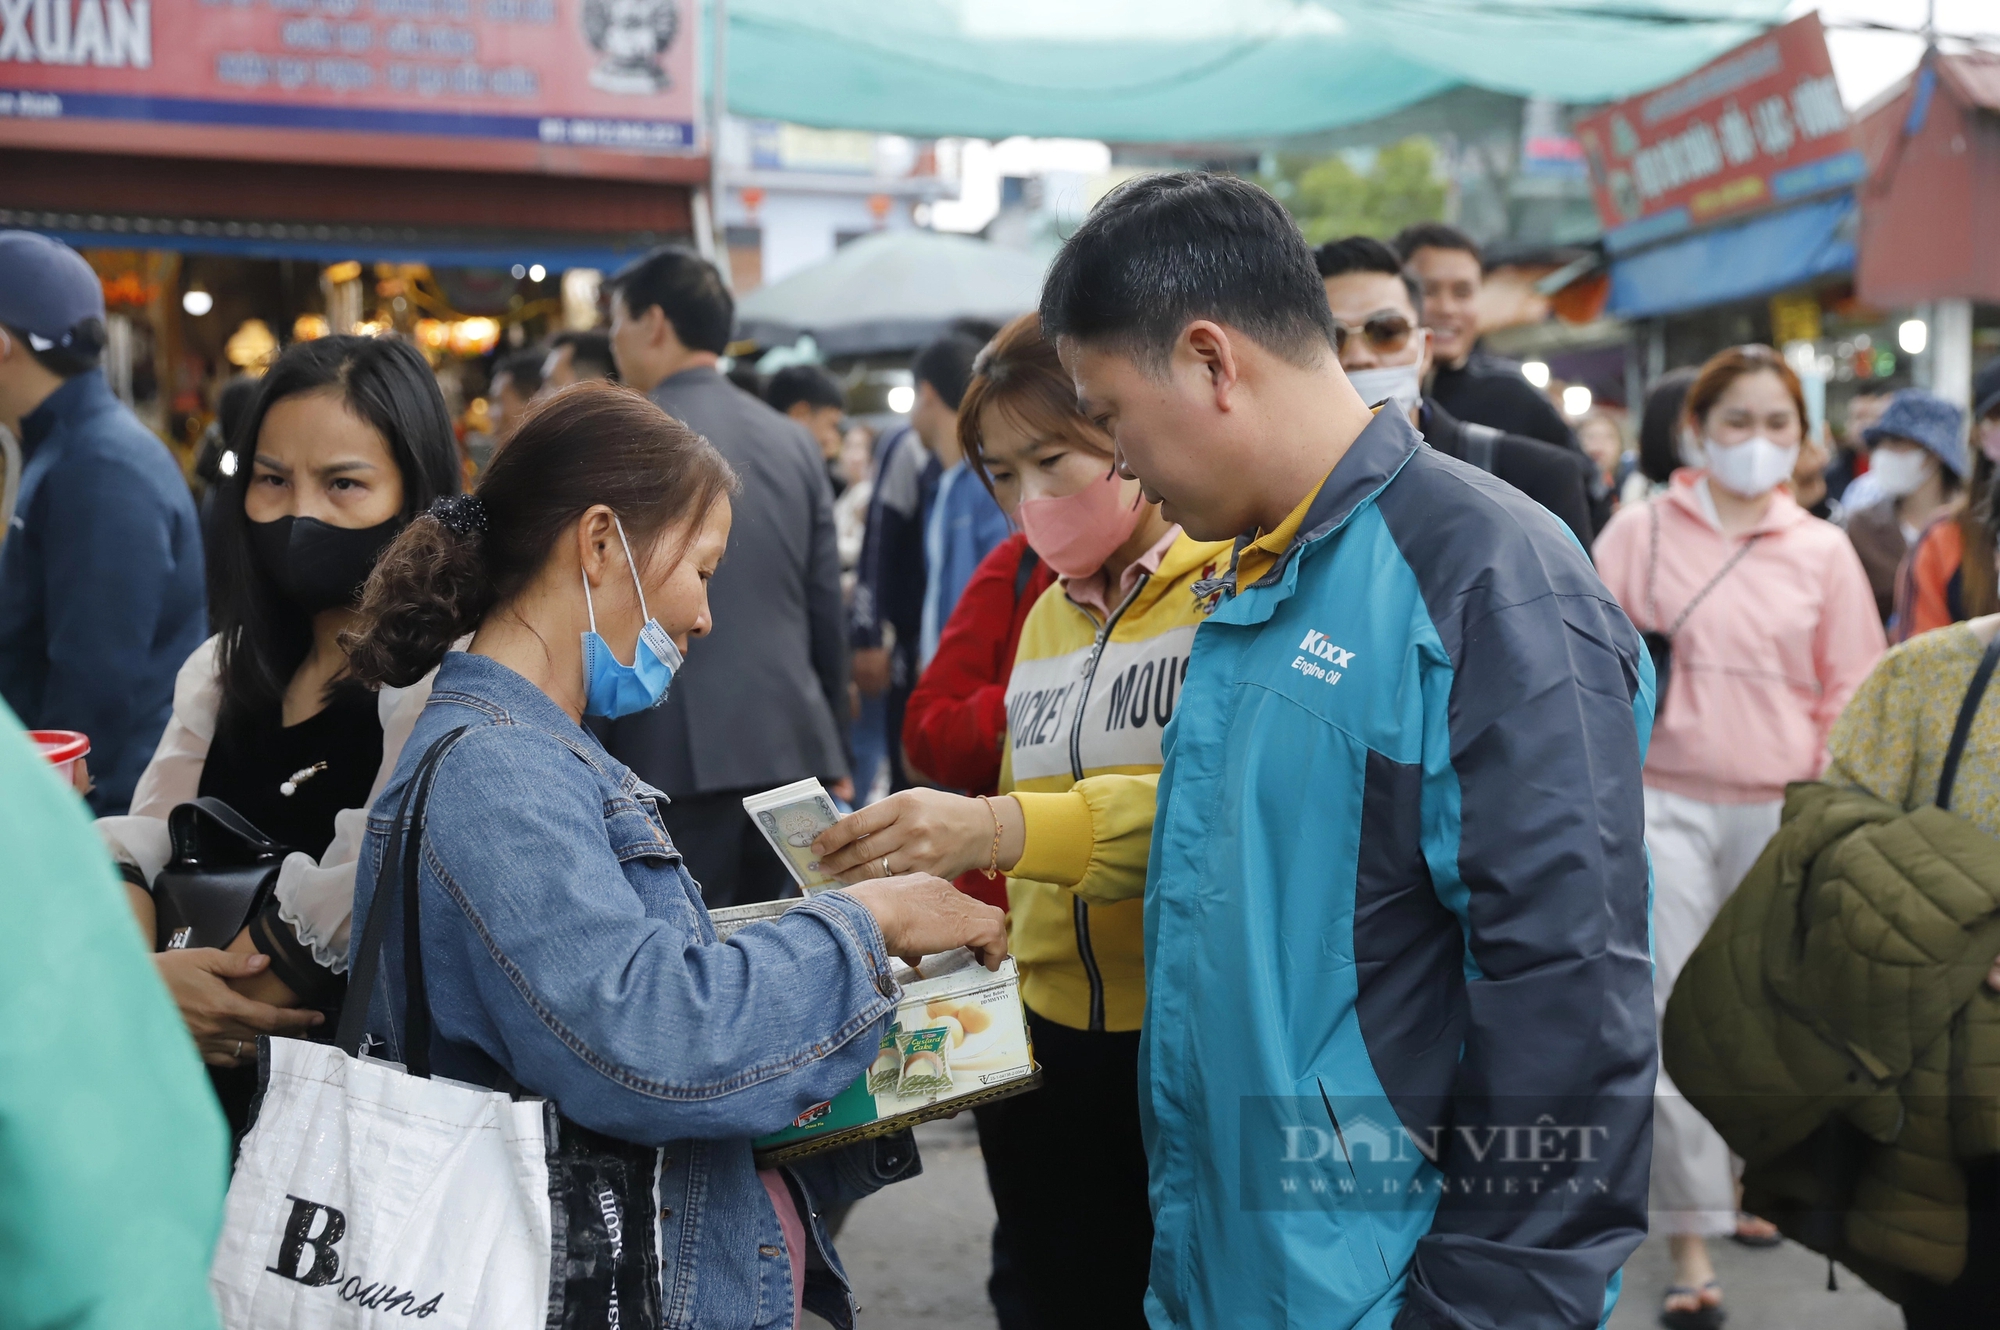 Phí đổi tiền lẻ lên tới 18%, thịt bò giá 250.000 đồng/kg tại chợ Viềng, Phủ Dầy Nam Định hút khách- Ảnh 4.